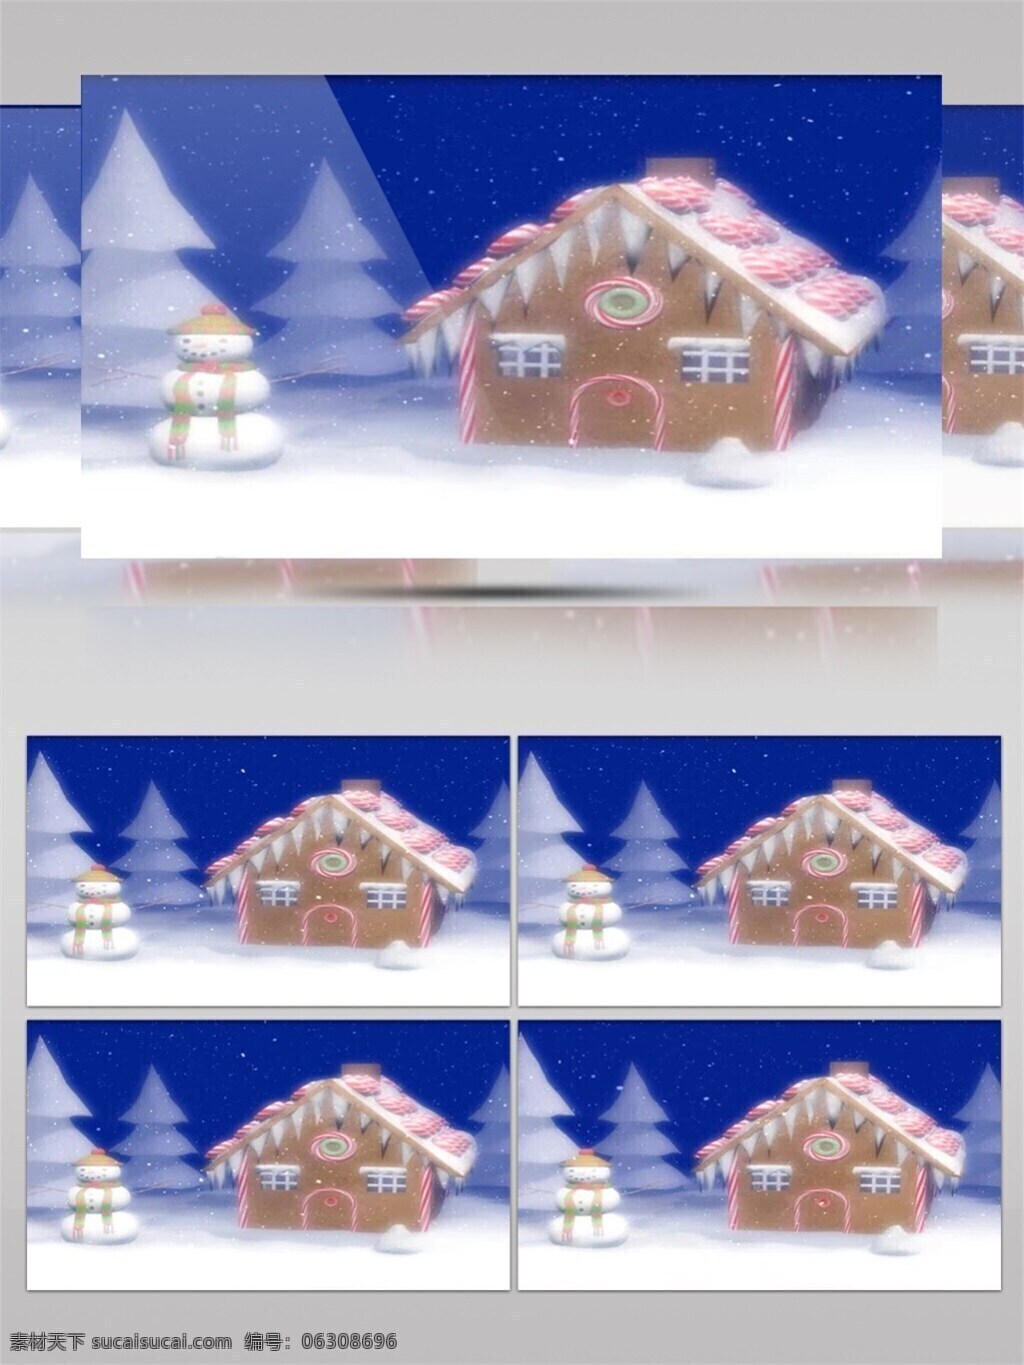 小 屋子 圣诞节 视频 节日壁纸 节日 特效 圣诞节庆祝 圣诞节小屋 雪夜景色